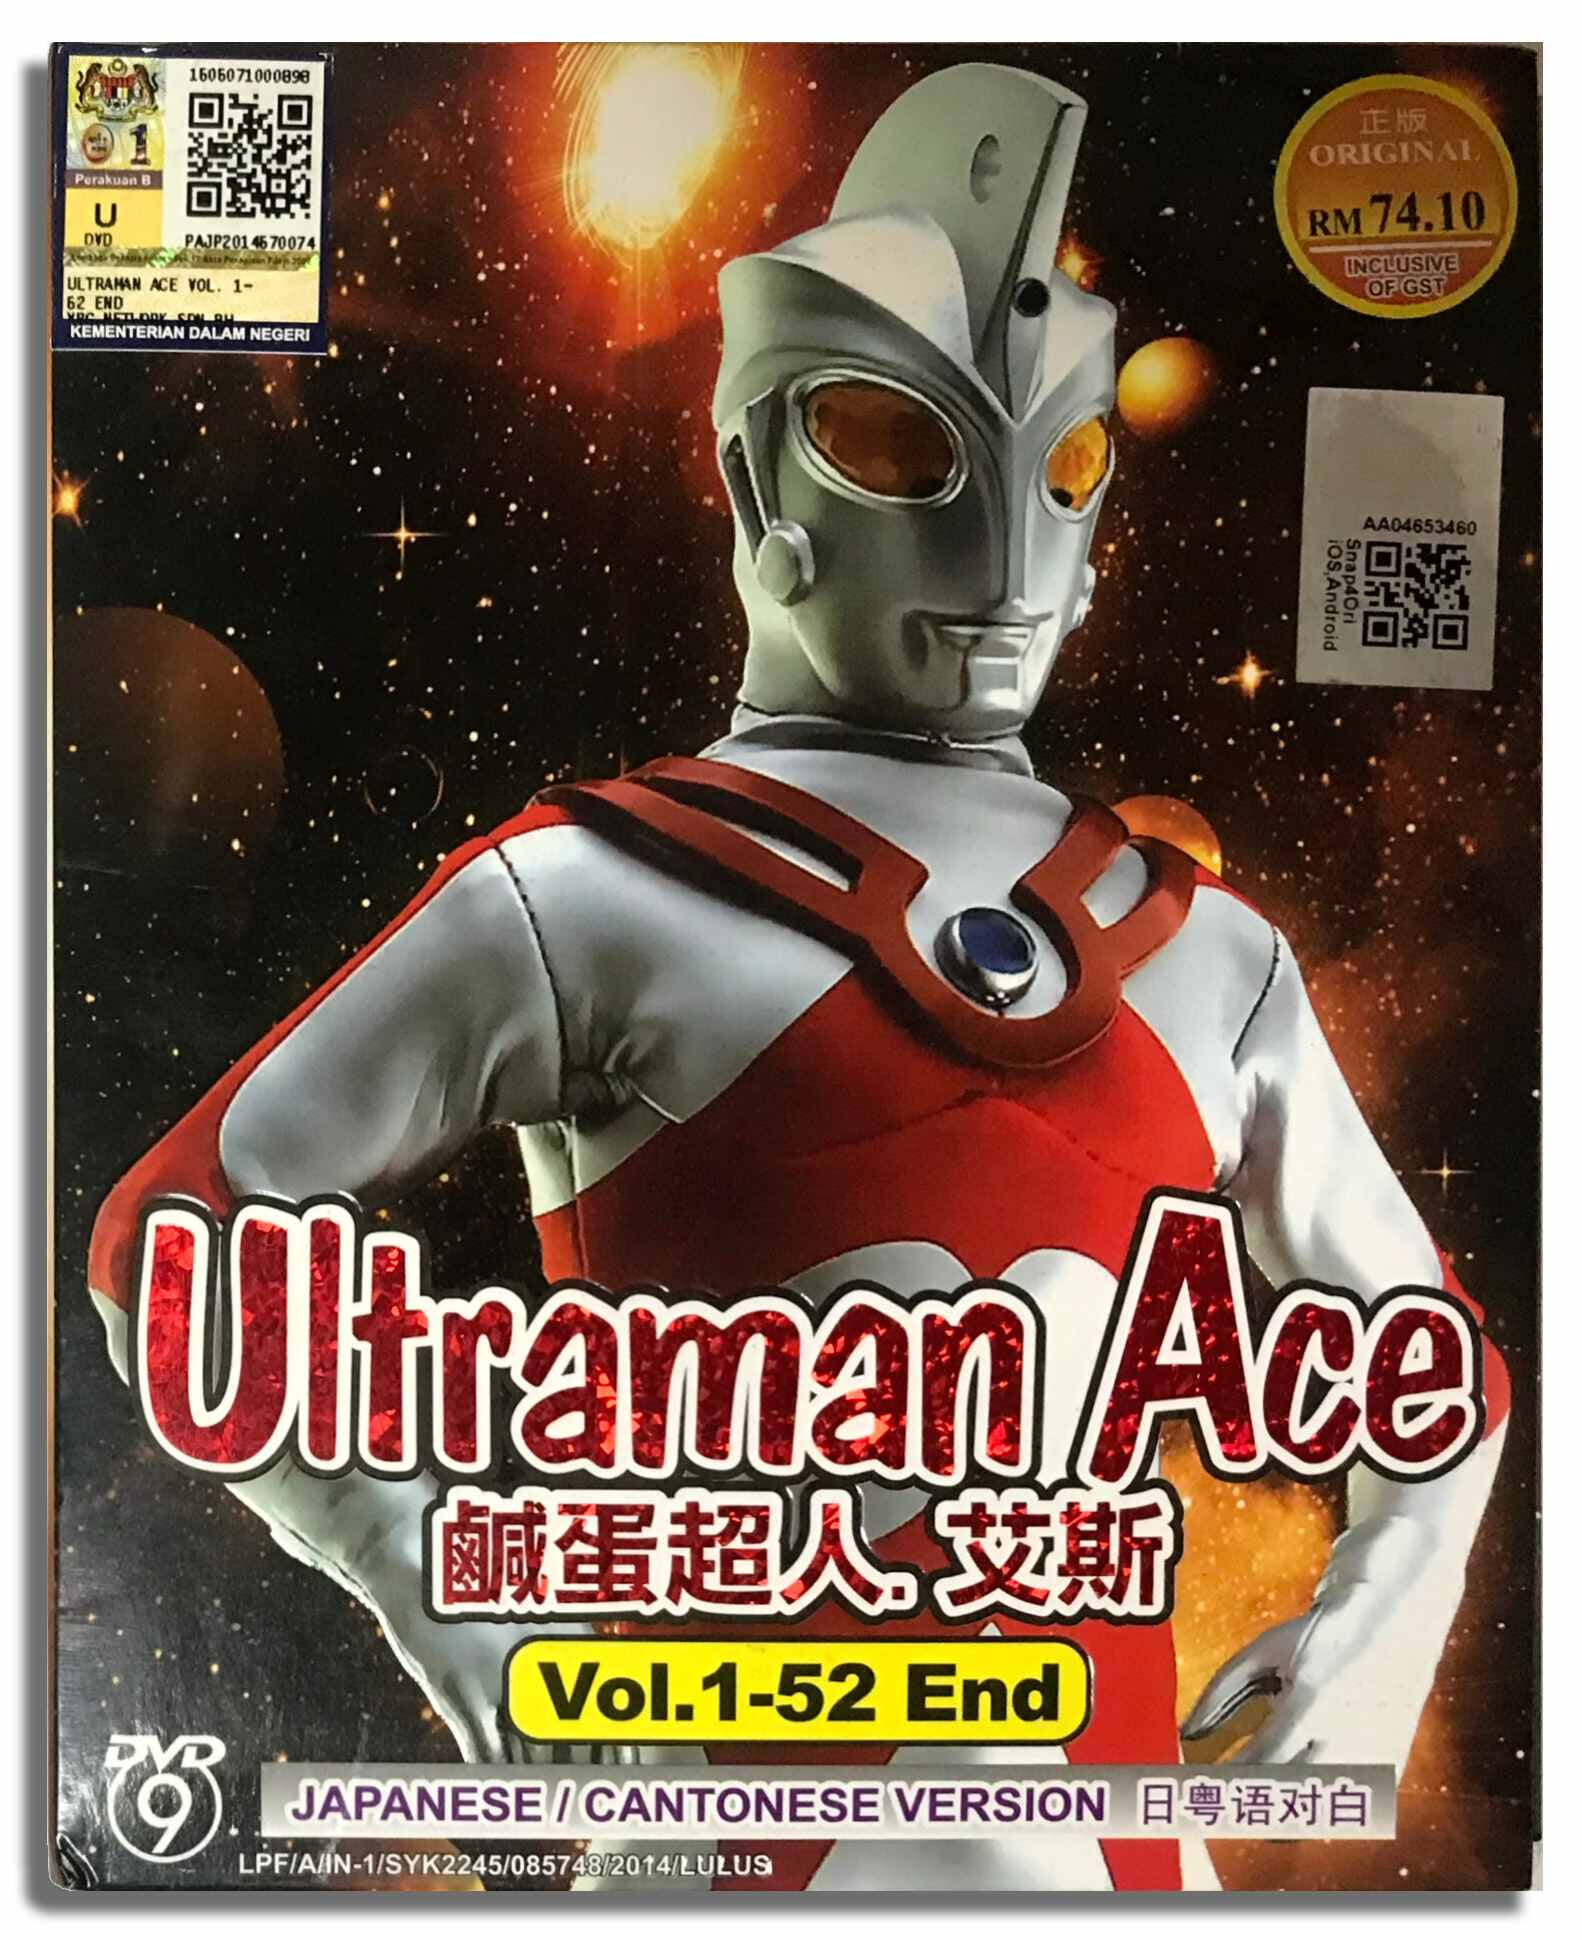 [DVD] ULTRAMAN ACE COMPLETE TV SERIES Vol.1-52